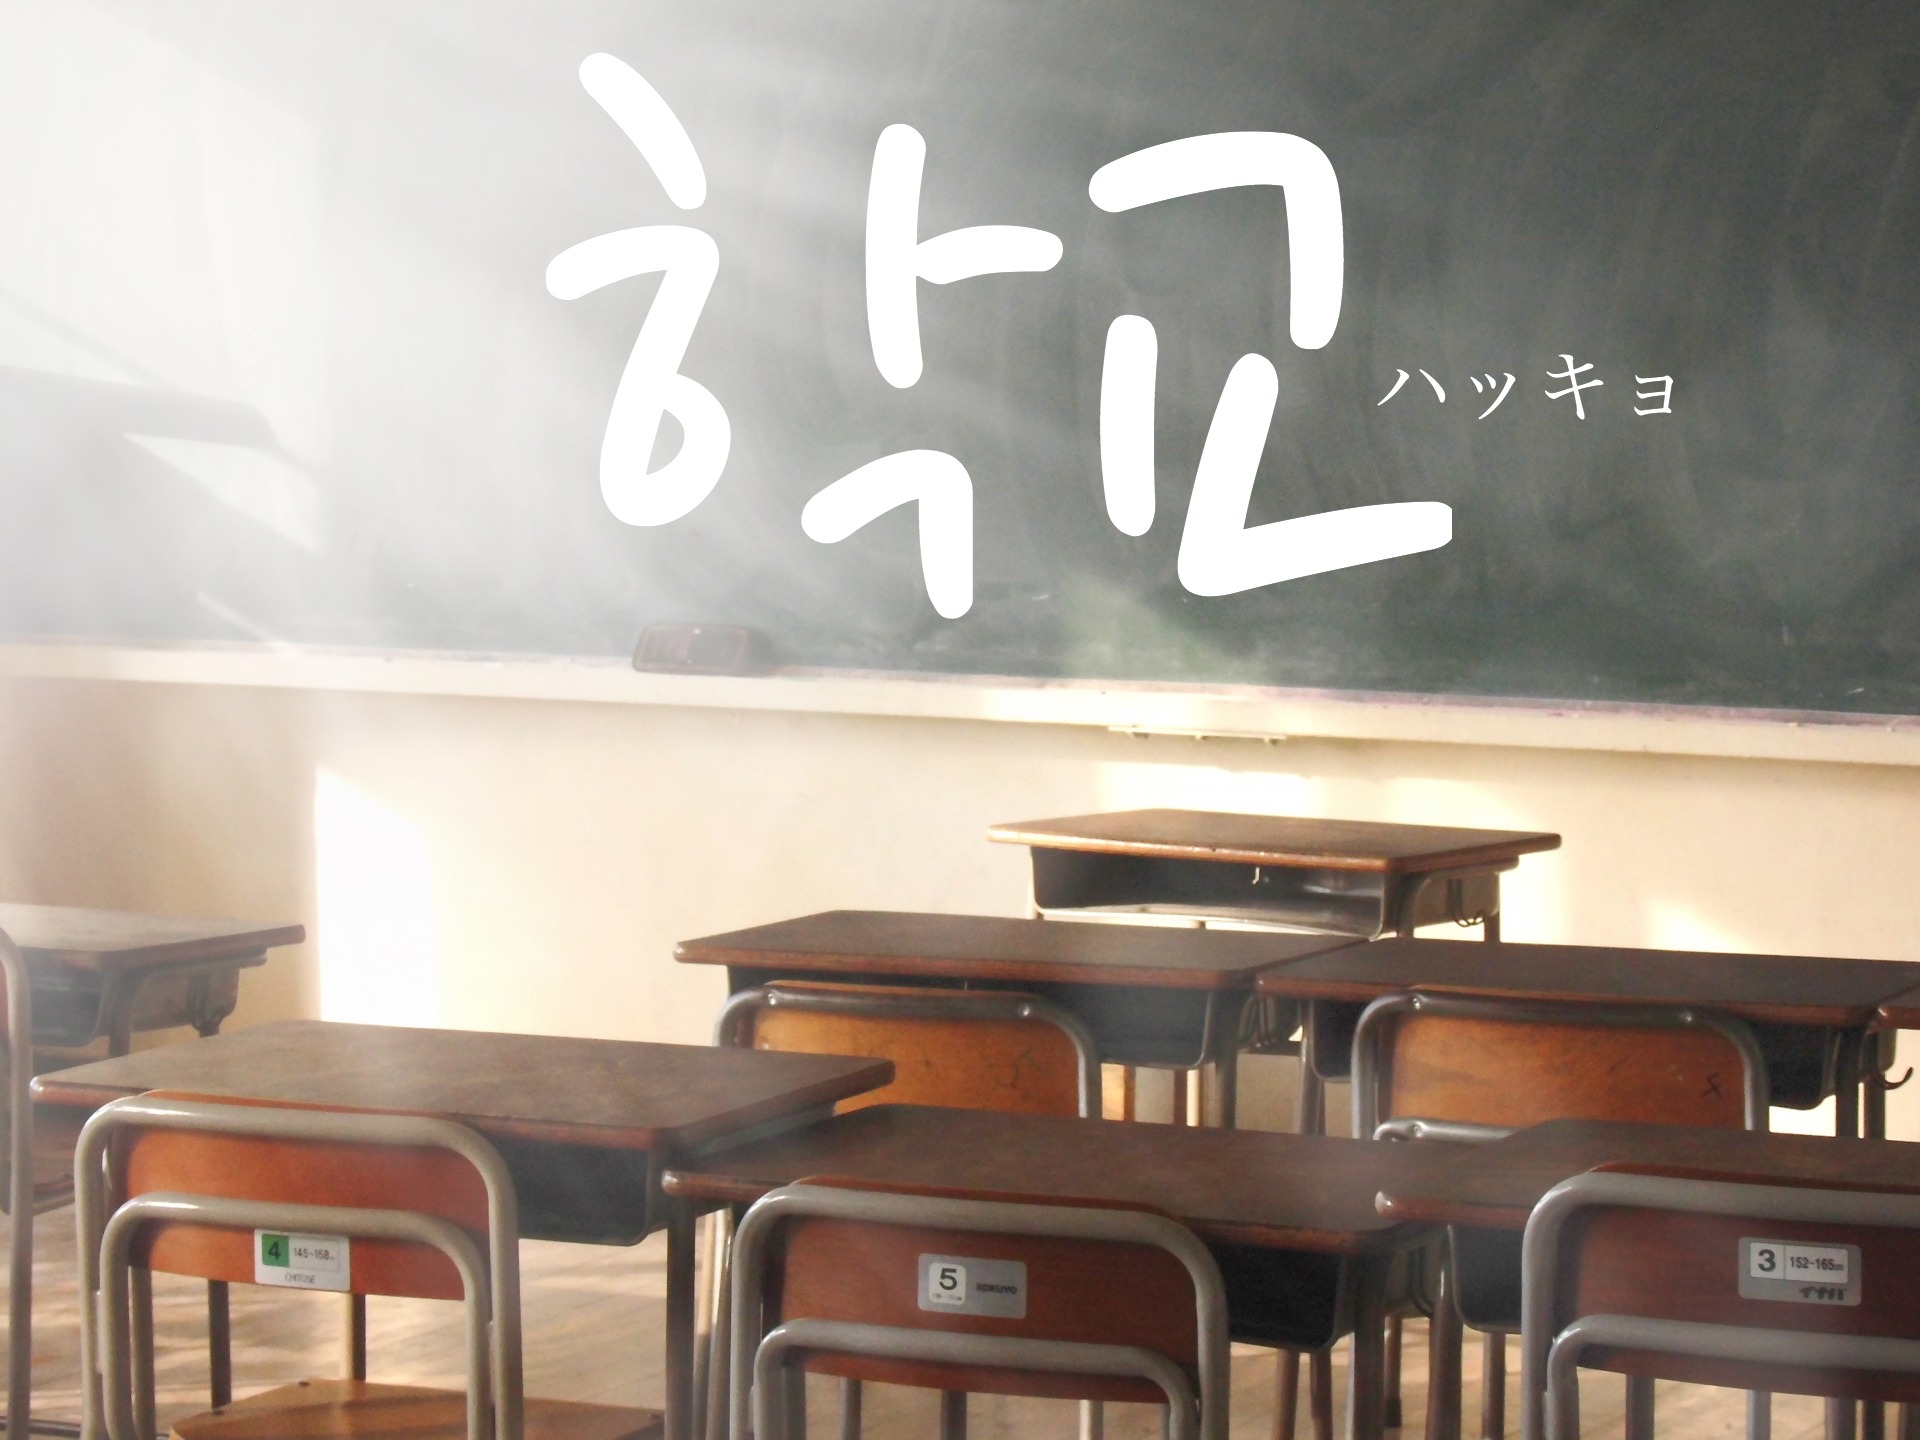 koreanword-school